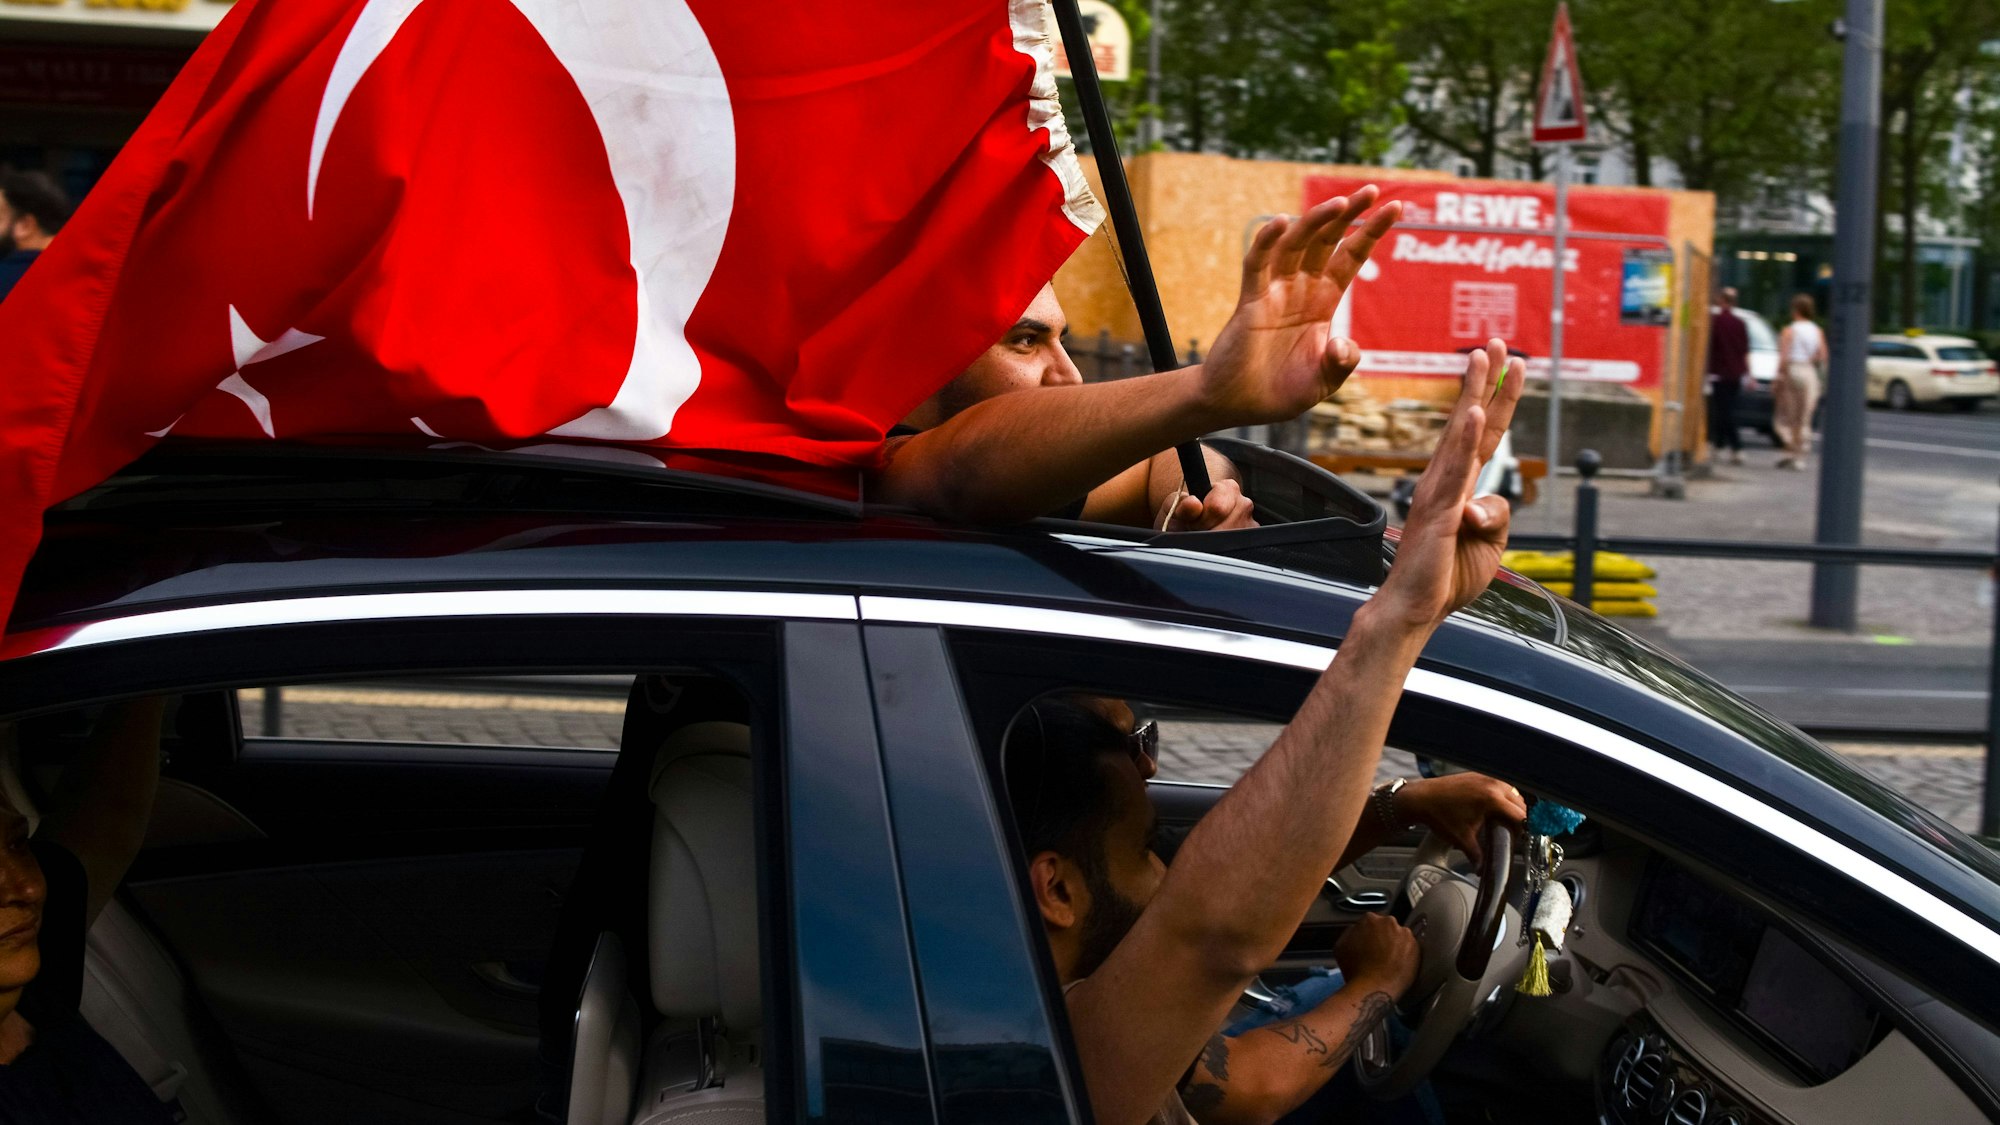 Türkeistämmige haben am Sonntag in Köln den Wahlsieg von Erdogan gefeiert